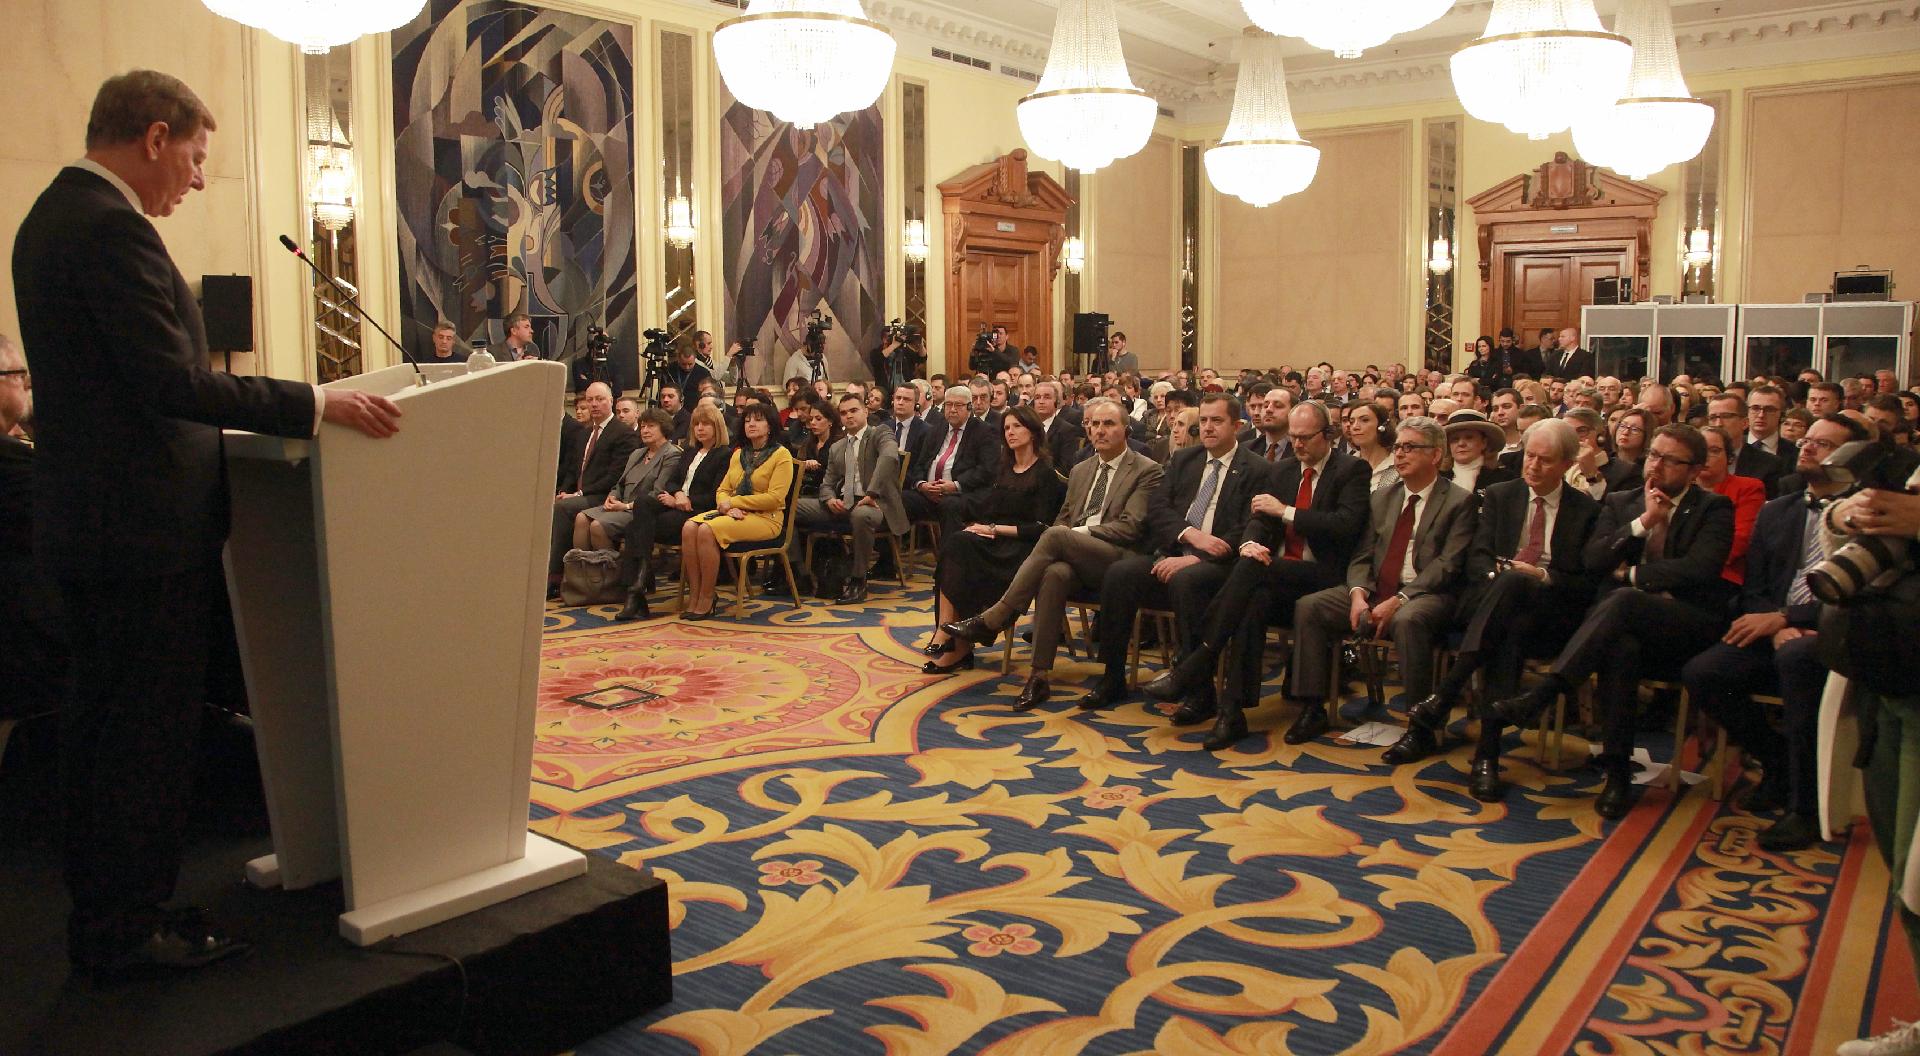 Etwa 250 Gäste nahmen an der Veranstaltung teil. Gekommen waren hochrangige Vertreter aus der Politik - darunter die Präsidentin der bulgarischen Volksversammlung - und Zivilgesellschaft.